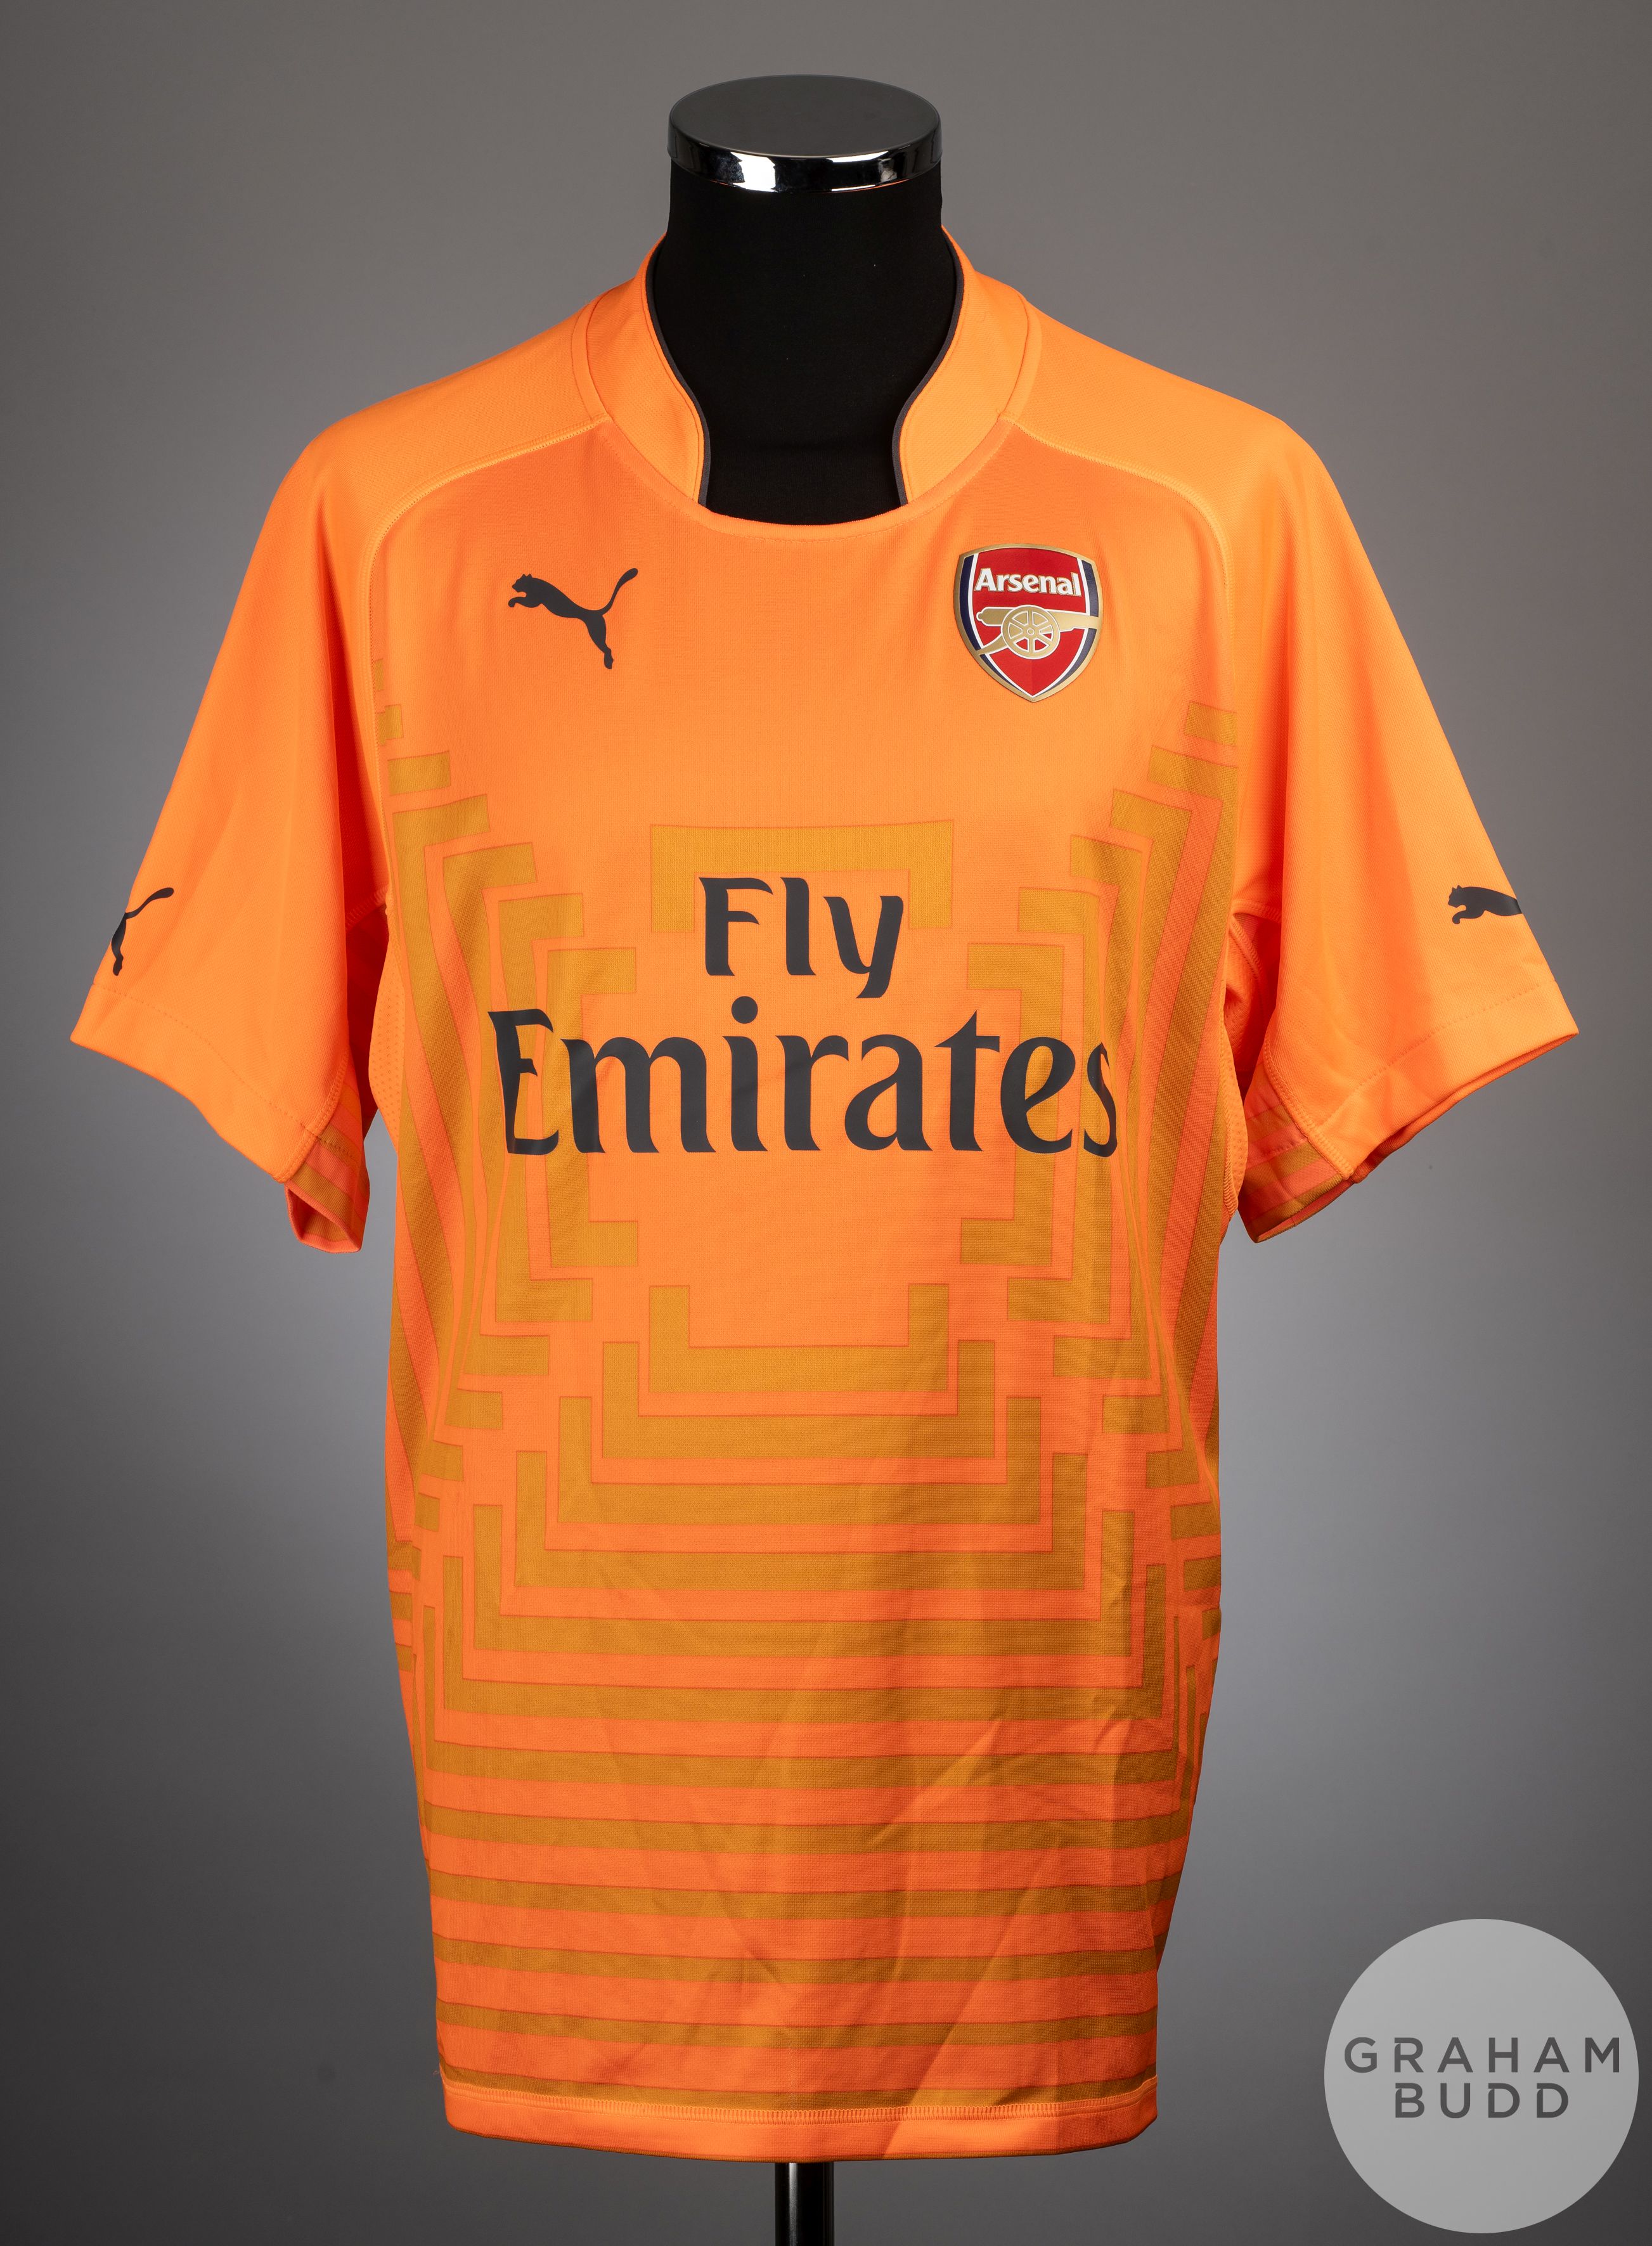 Wojciech Szczesny orange No.1 Arsenal v. Manchester United match worn shirt, 2014-15